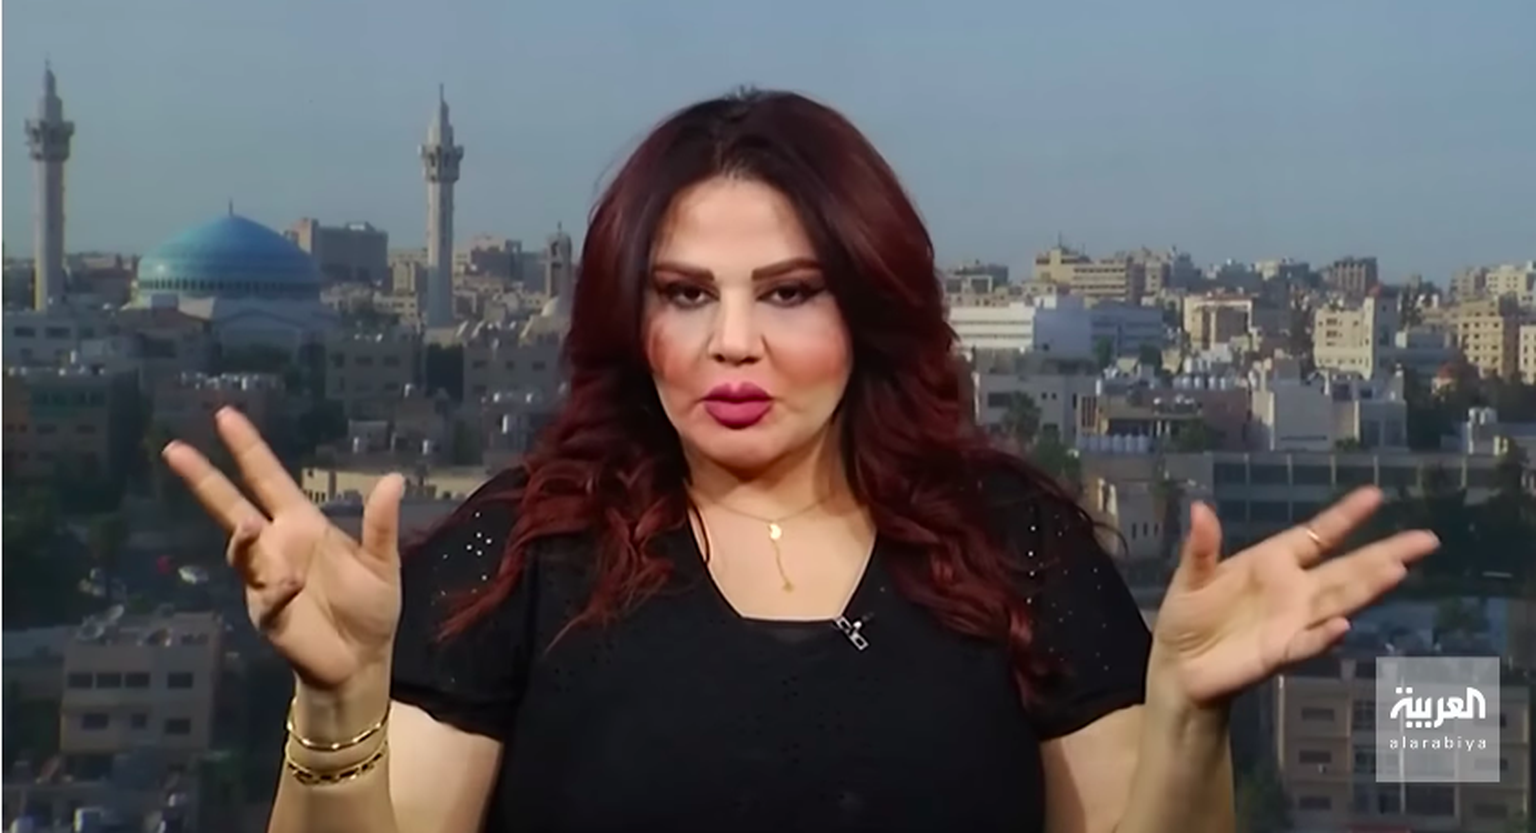 Iraagi näitlejanna ja telesaatejuht Enas Taleb kohalikus uudistesaates.